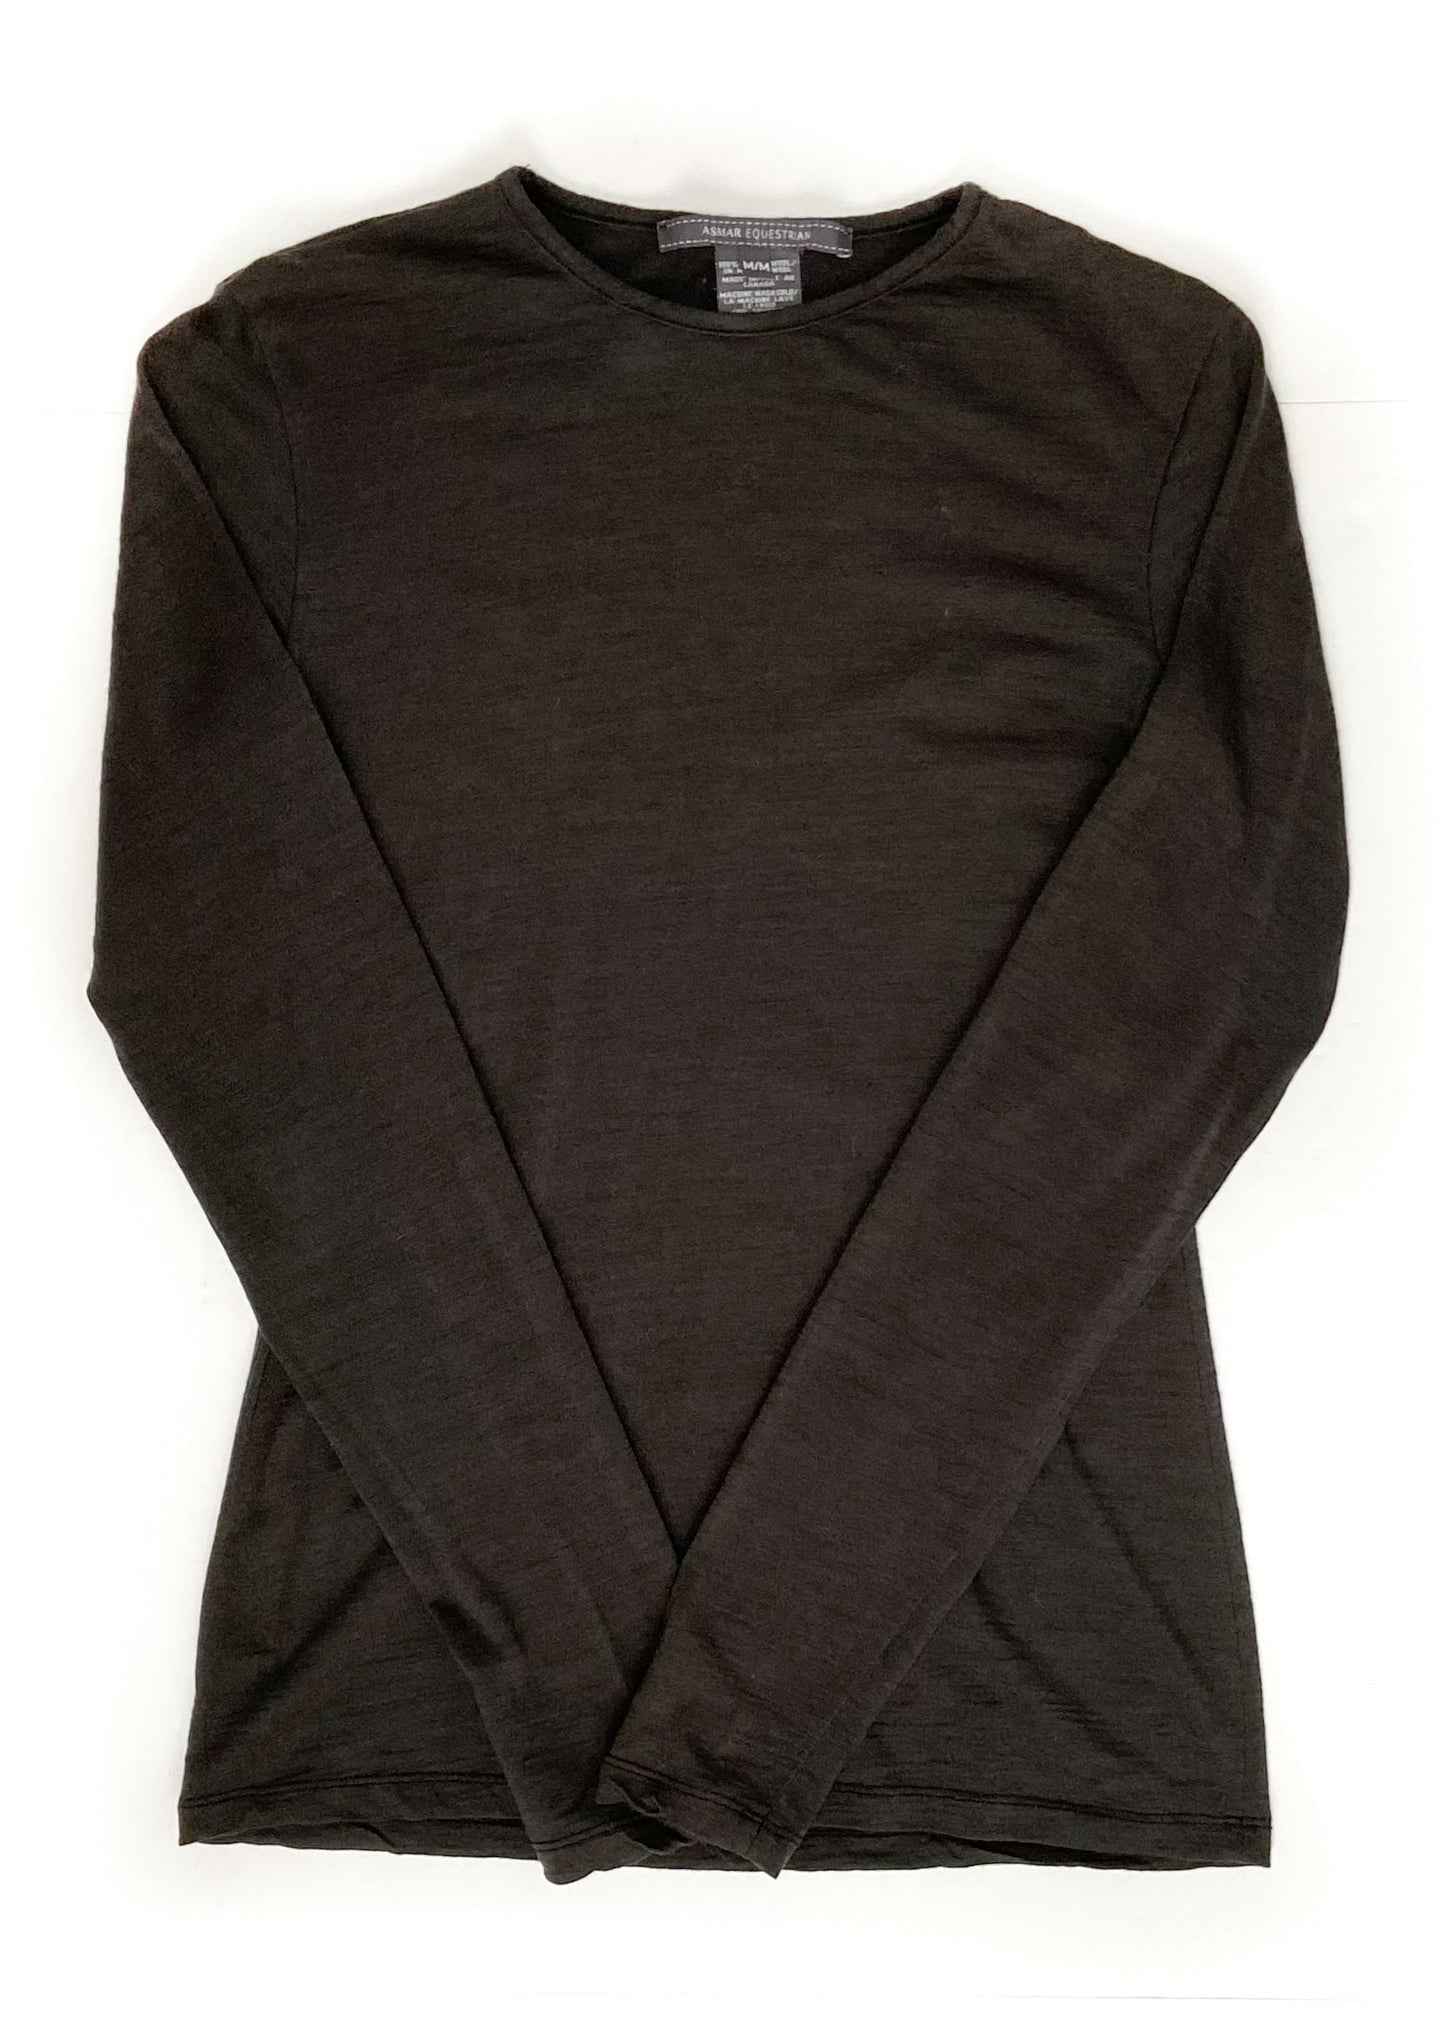 Asmar Long Sleeve Top - Brown/Grey - Women's Medium